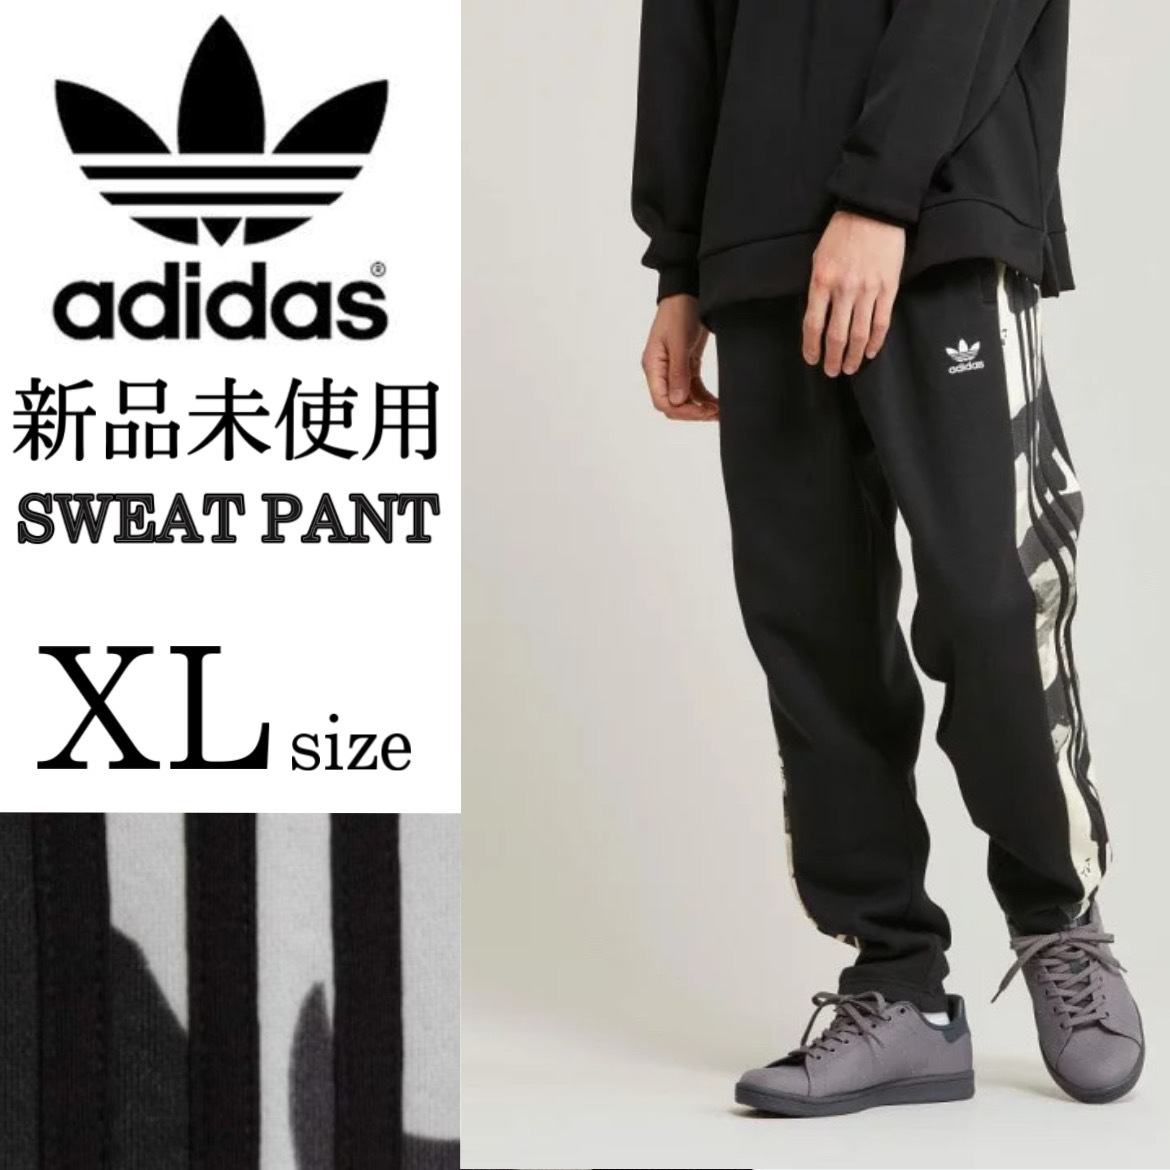 送料無料 新品 adidas originals カモ柄 スウェットパンツ XLsize 黒 